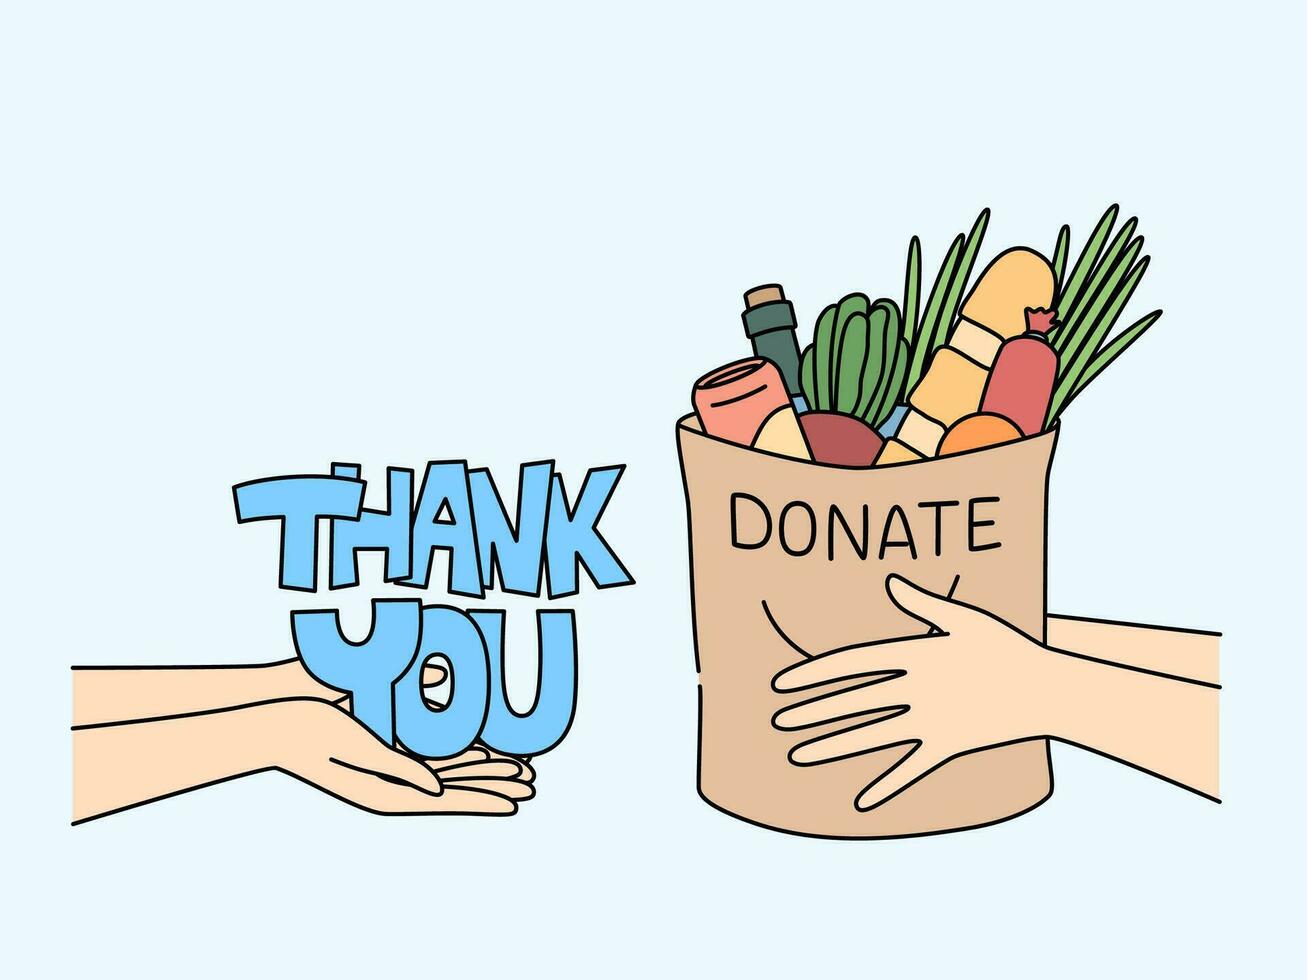 zak voedsel in handen van Mens in de buurt opschrift dank jij, voor concept liefdadigheid en helpen mensen in nodig hebben vector